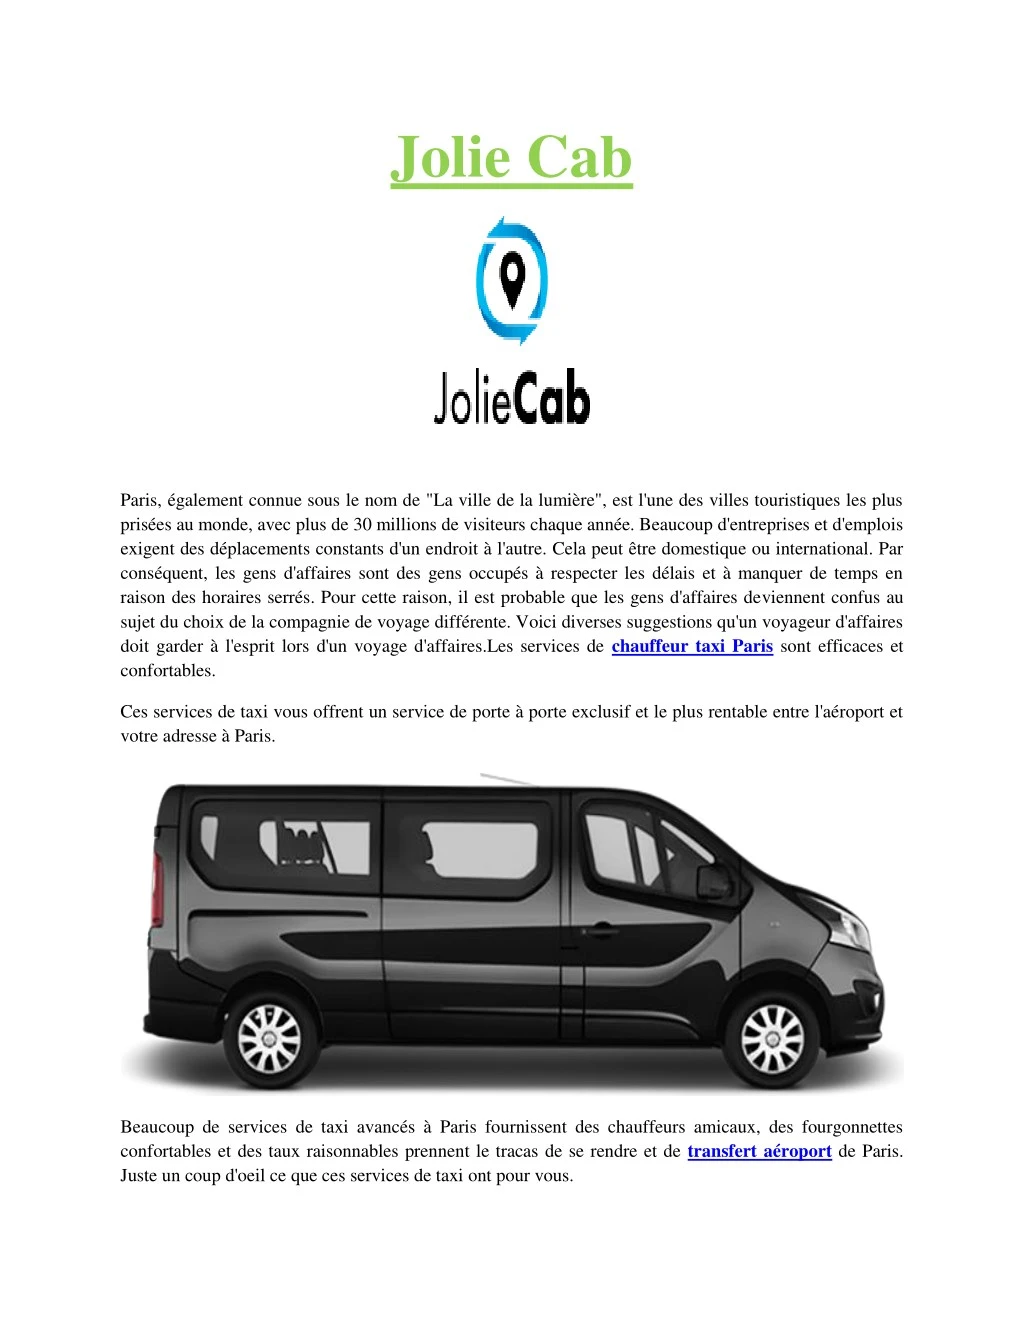 jolie cab